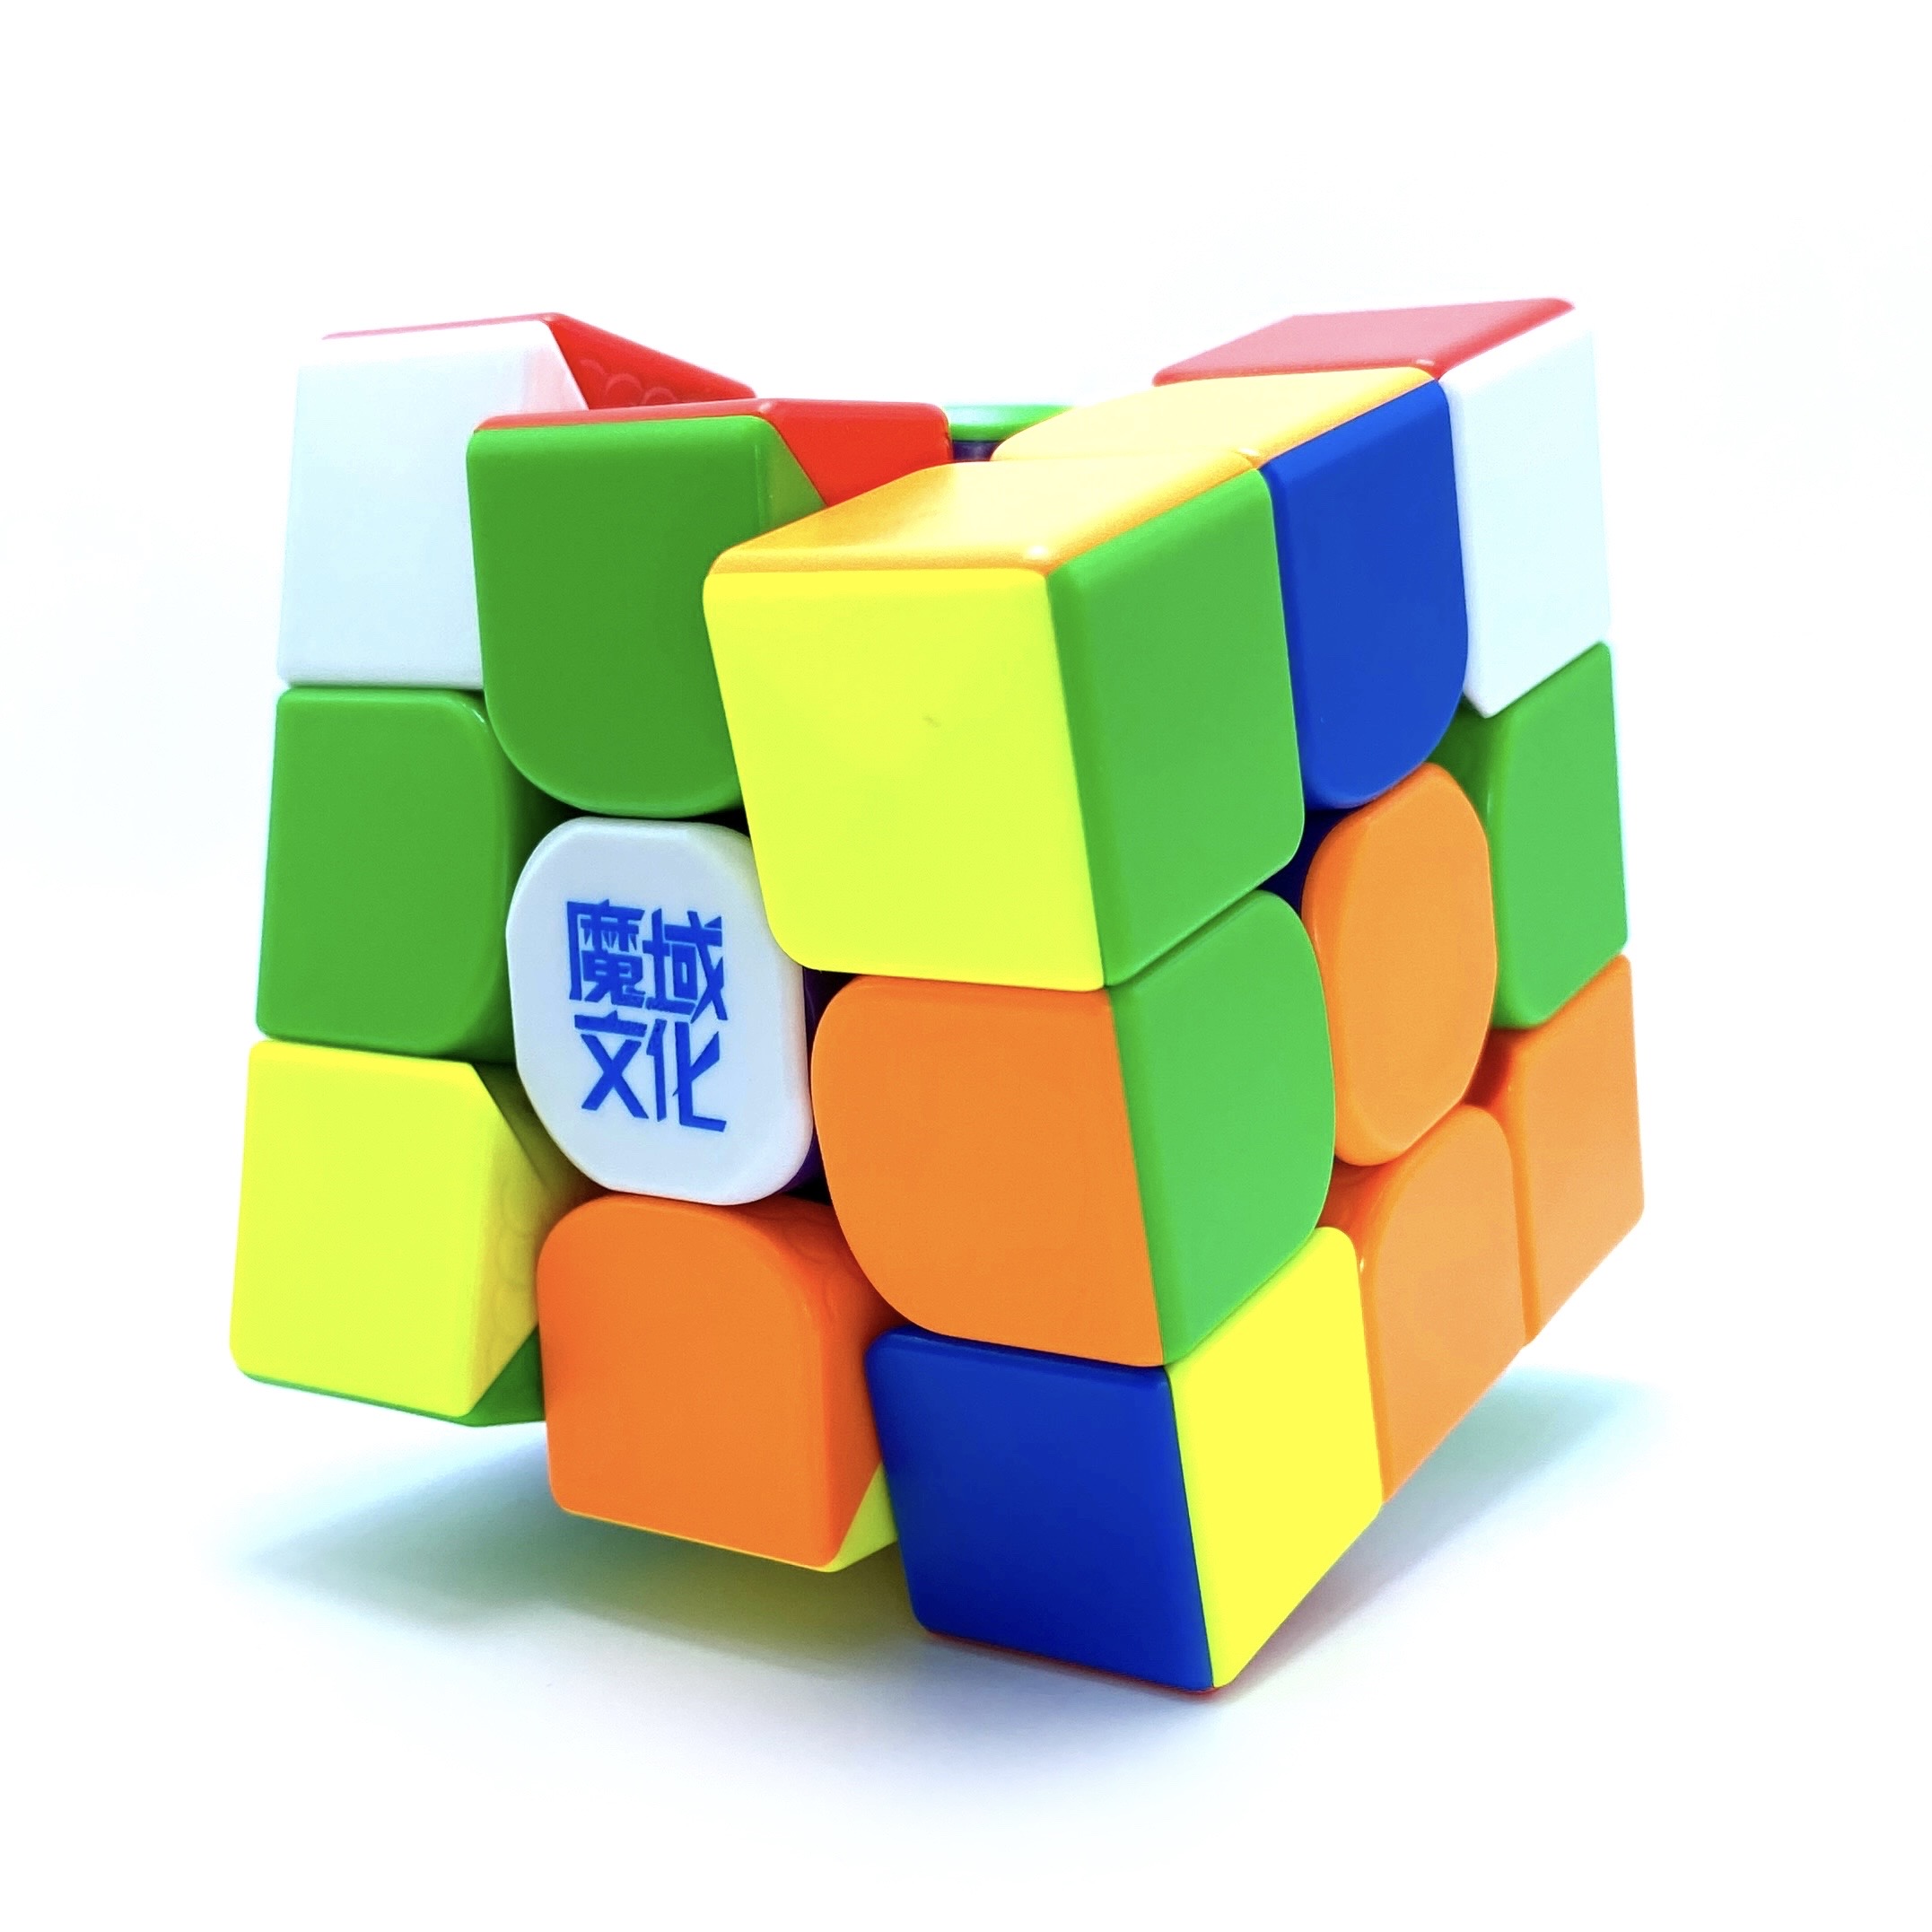 Cubo Mágico Profissional 3x3x3 MoYu RS3M MagLev - Stickerless Original -  Cubo ao Cubo - A Sua Loja de Cubo Mágico Profissional